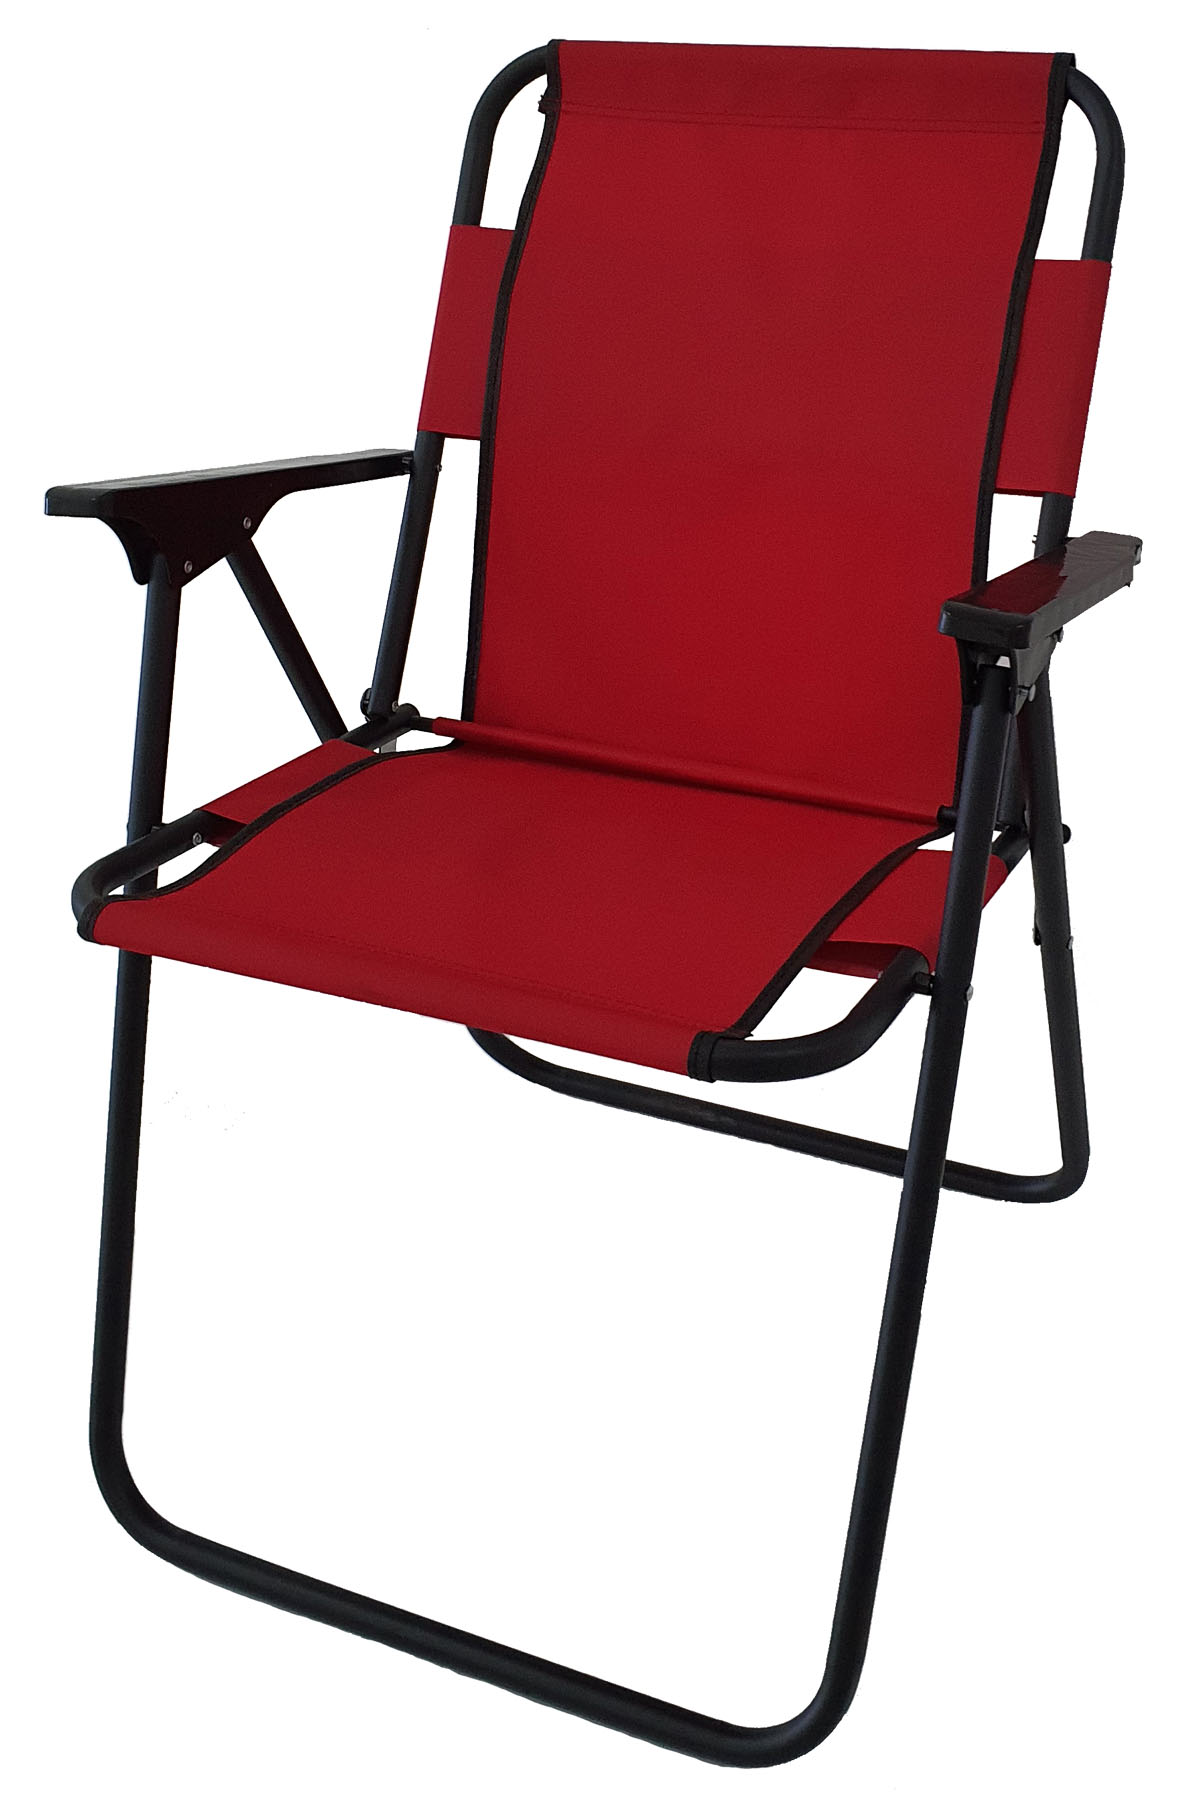 Bofigo Camping Chair Folding Chair Picnic Chair Beach Chair Red